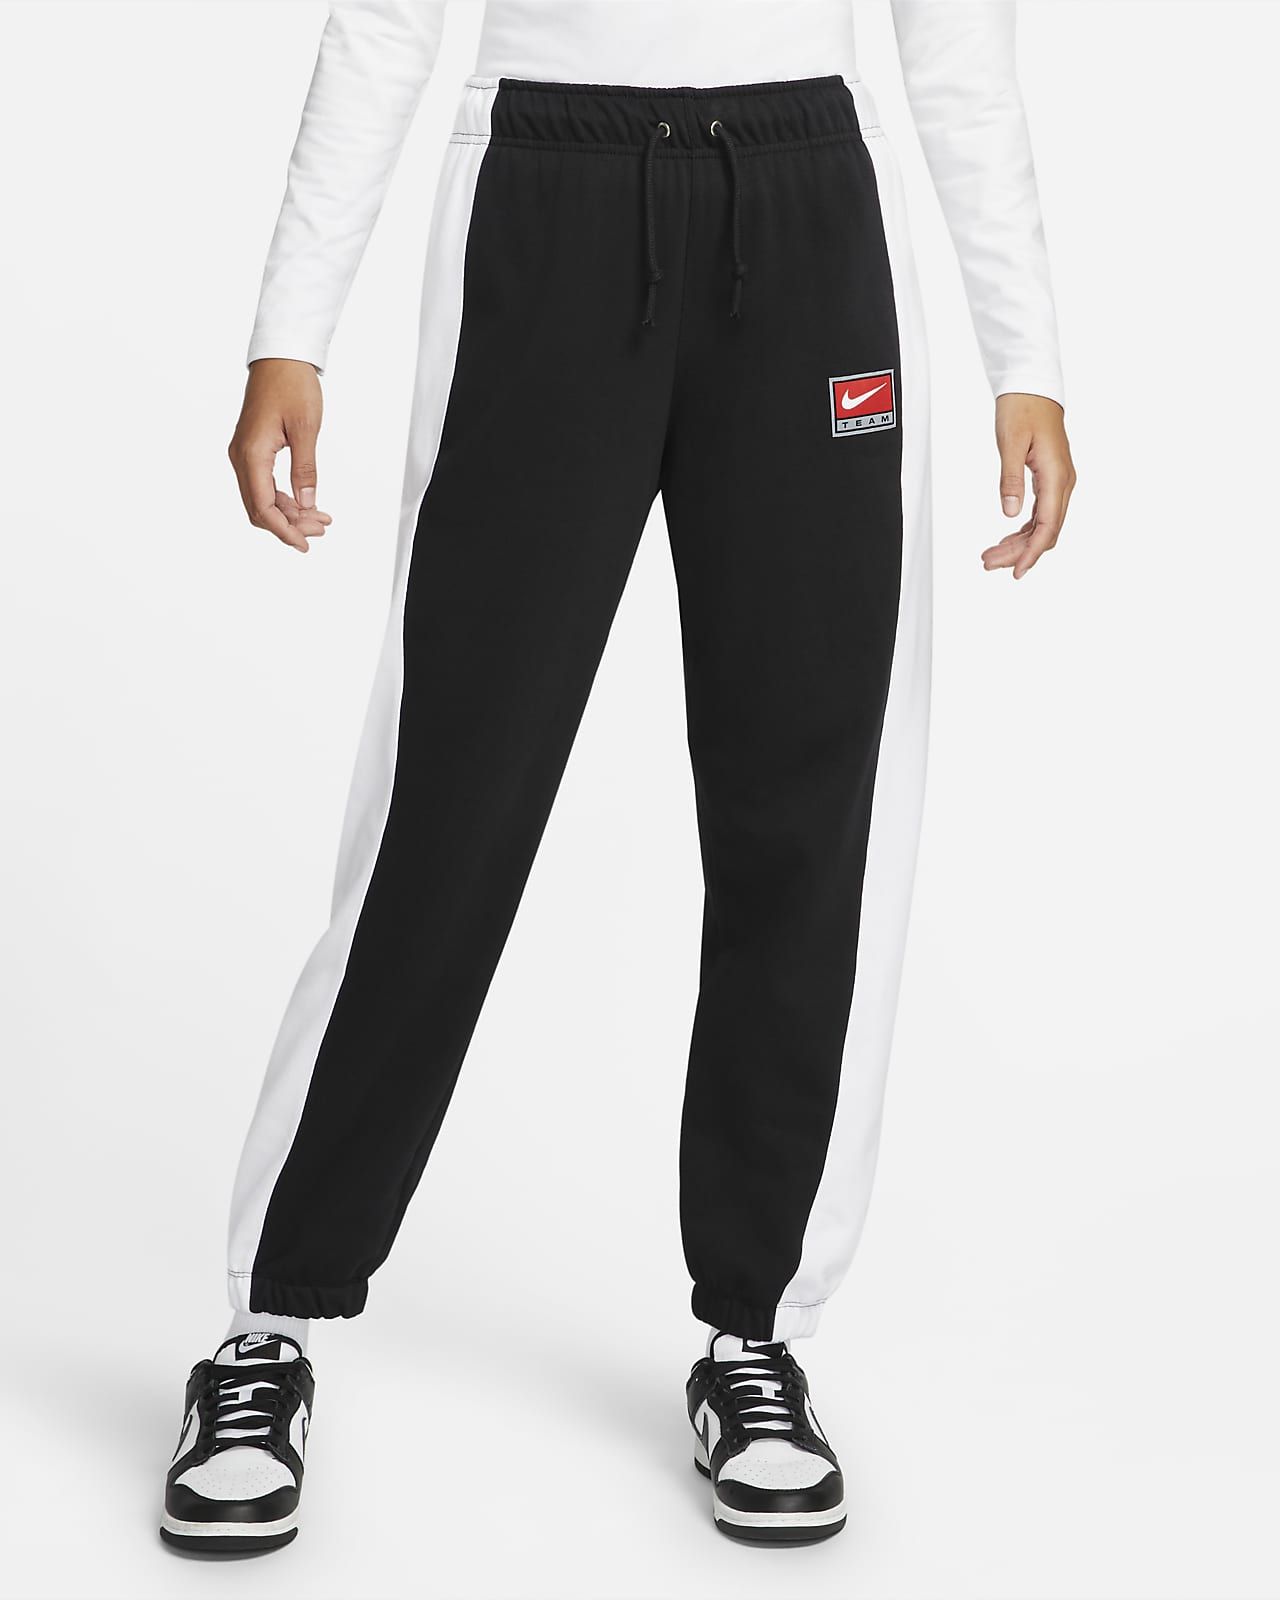 Nike Sportswear Team Nike Women's Fleece Pants. Nike.com | Nike (US)